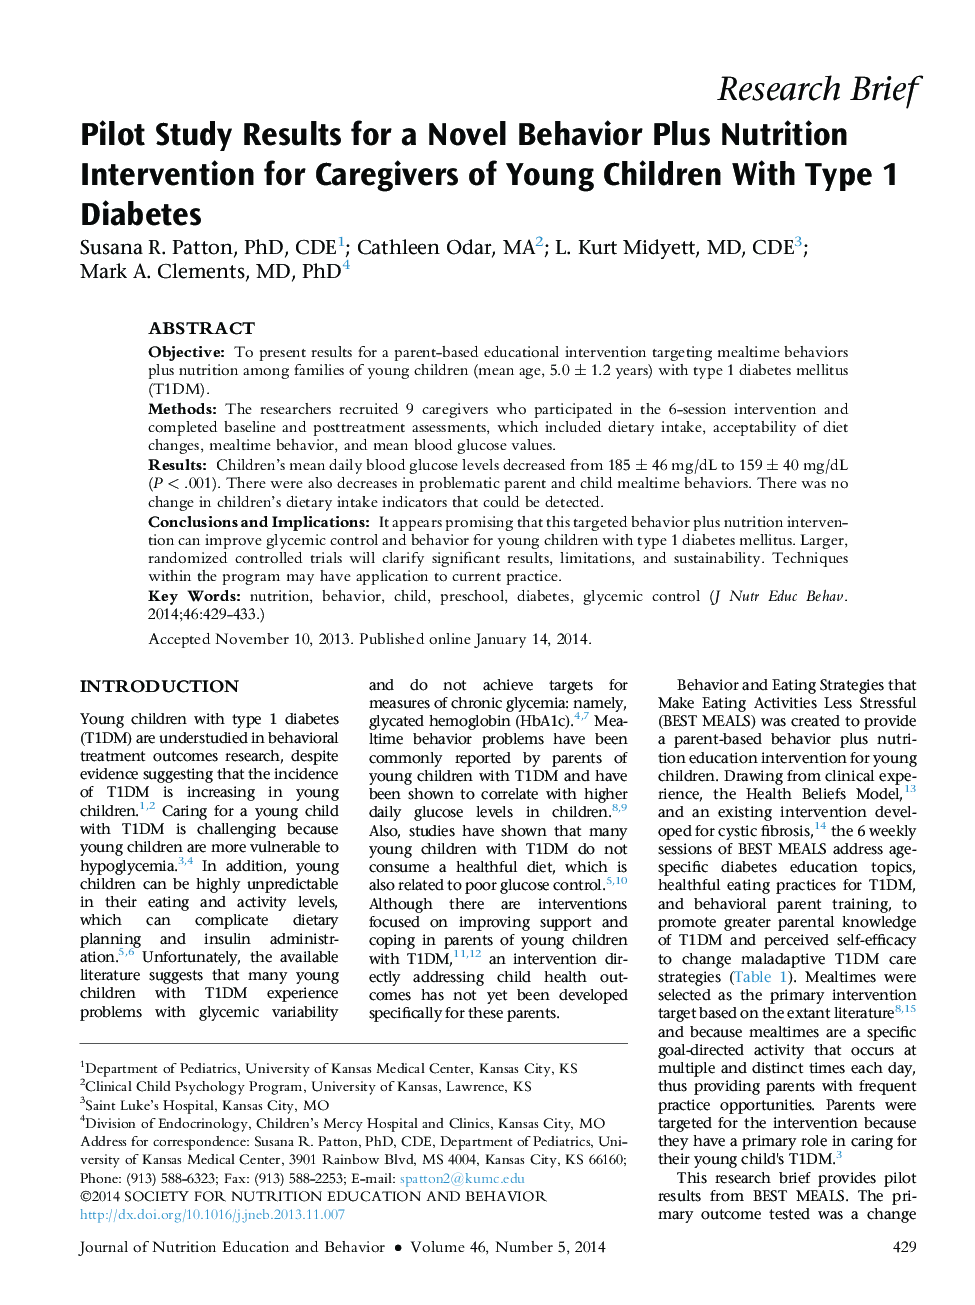 مطالعه مقدماتی نتایج یک رفتار به علاوه مداخله تغذیه برای کودکان با دیابت نوع 1